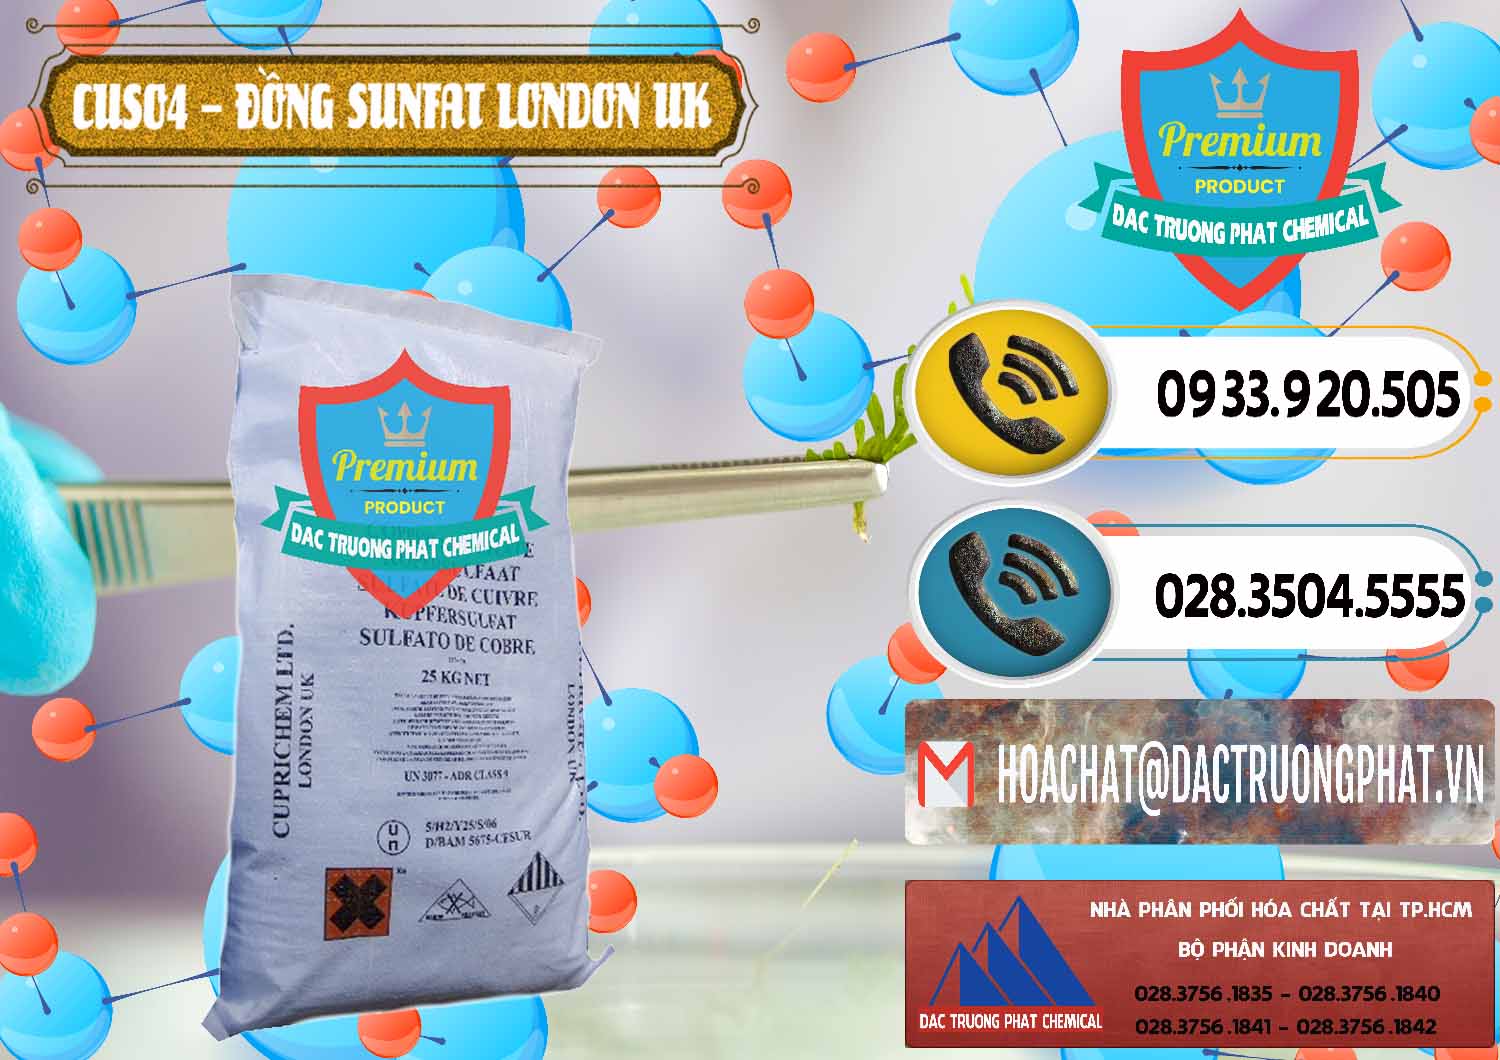 Công ty chuyên cung cấp và bán CuSO4 – Đồng Sunfat Anh Uk Kingdoms - 0478 - Công ty chuyên nhập khẩu & cung cấp hóa chất tại TP.HCM - hoachatdetnhuom.vn